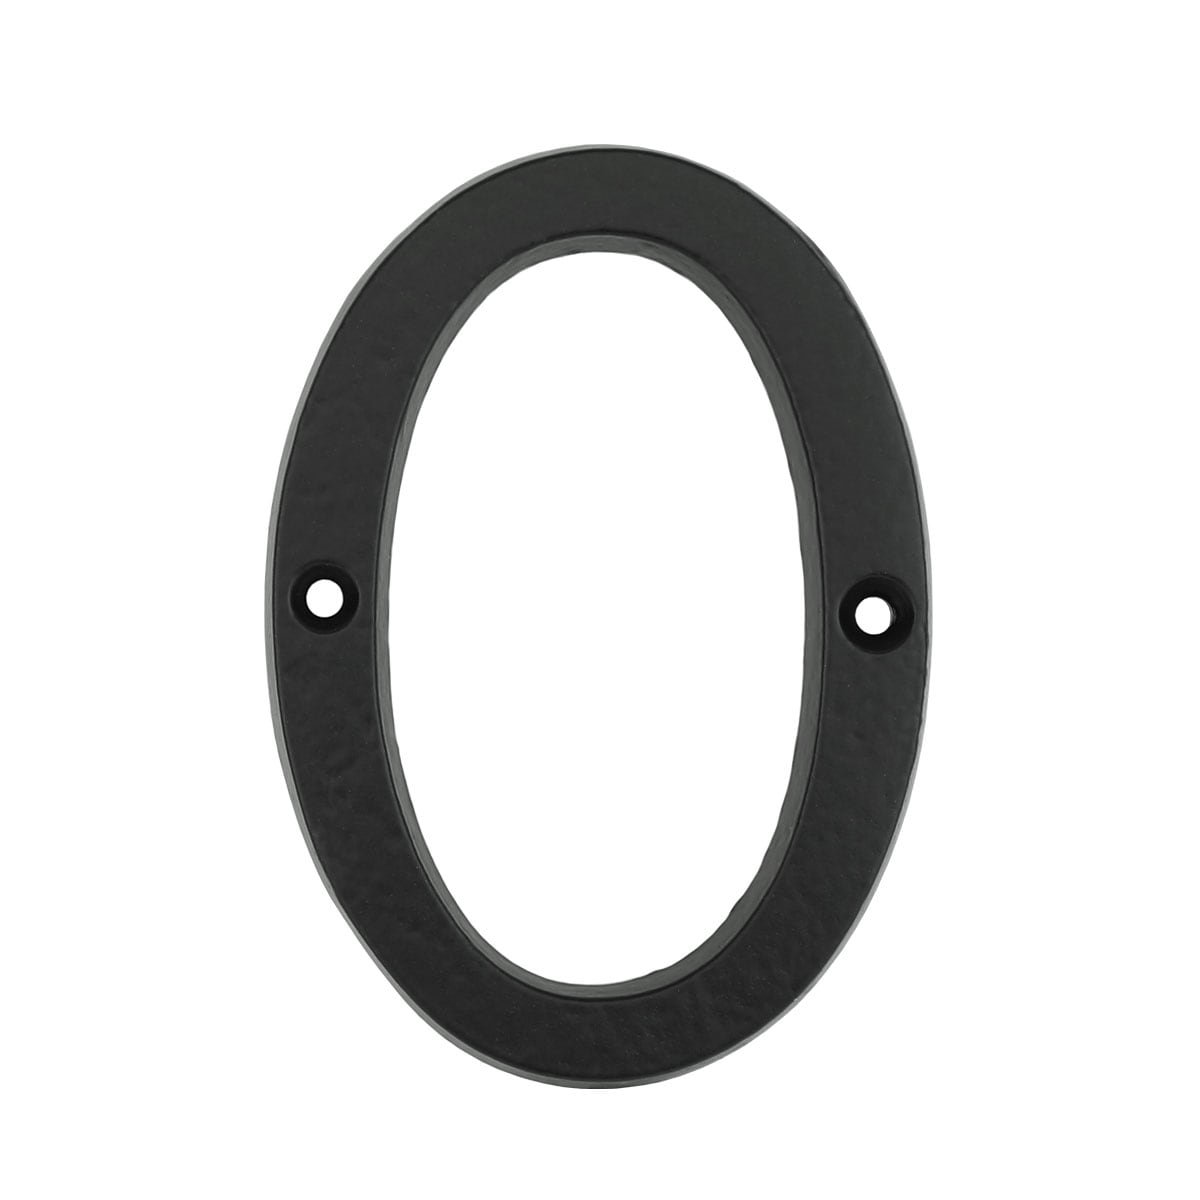 Dørnummer 0 nul sort jern - 102 mm